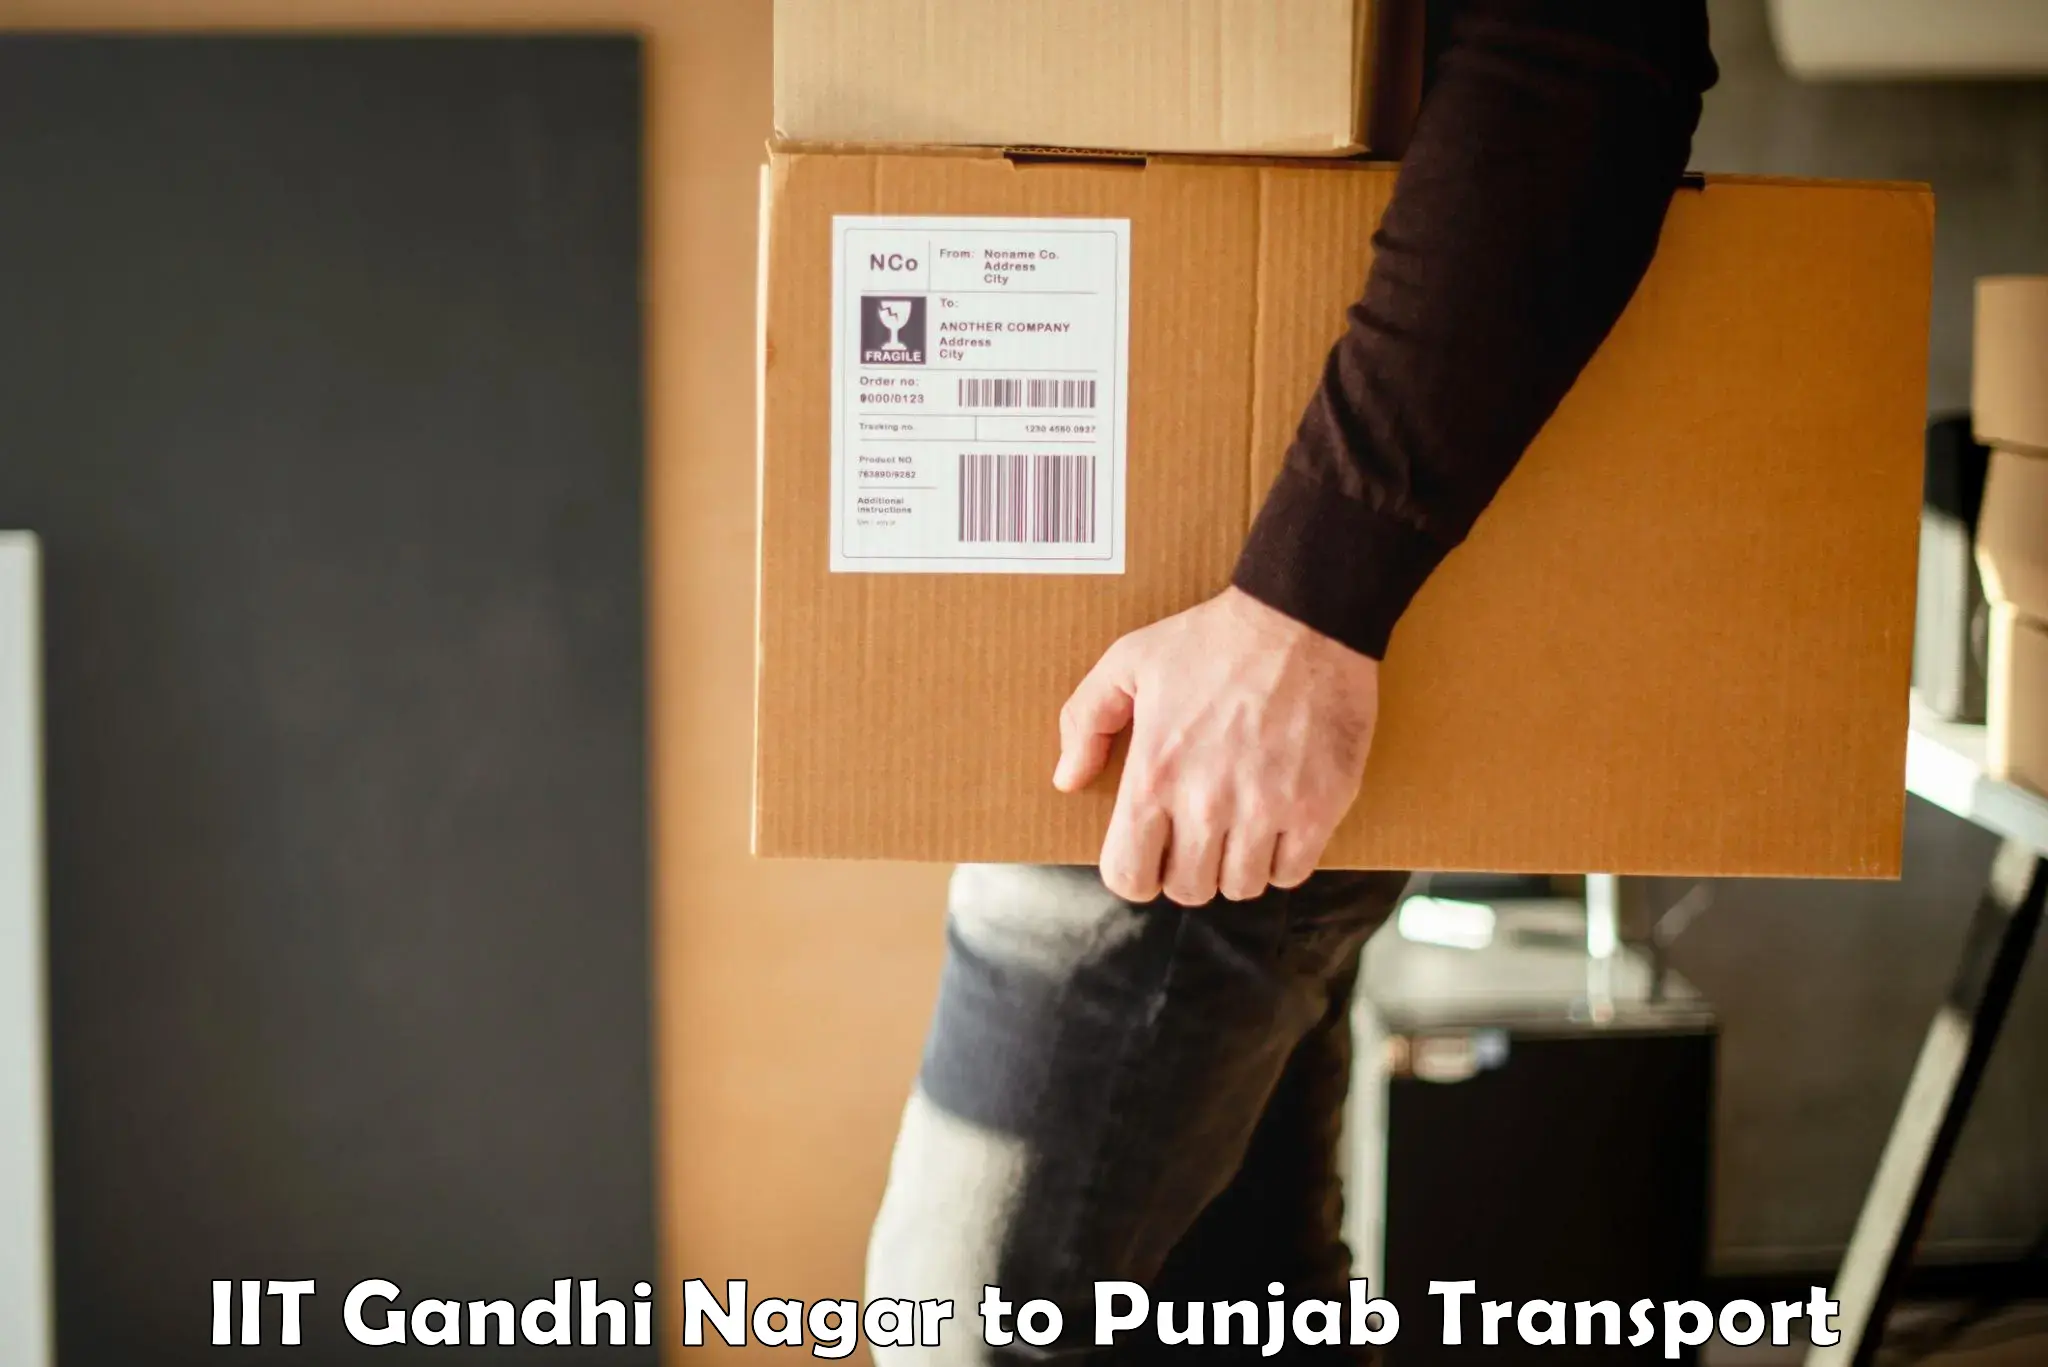 Container transport service IIT Gandhi Nagar to Nangal